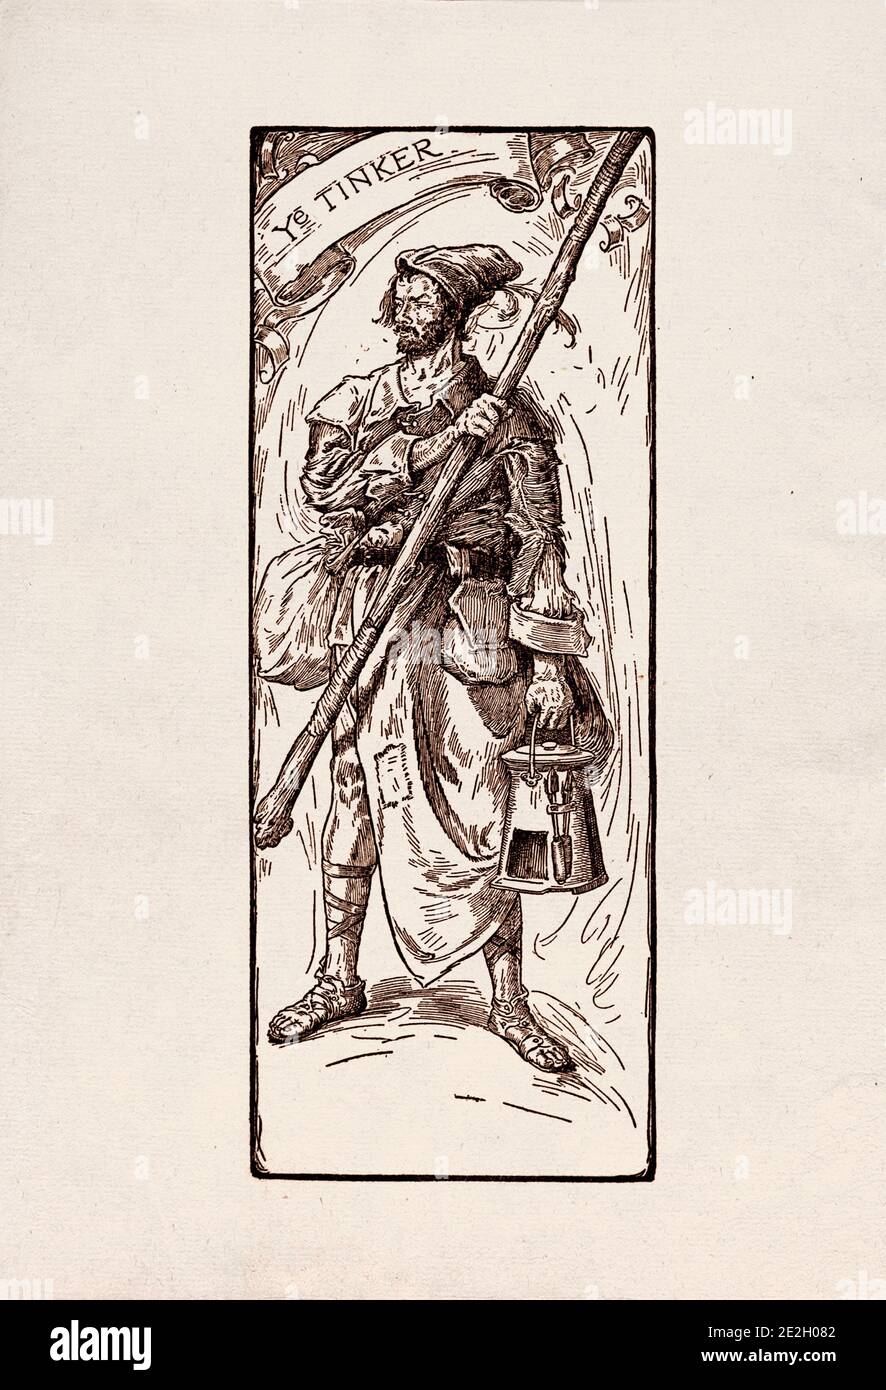 Incisione antica di personaggi letterari del folklore inglese dalle leggende di Robin Hood. Il Tinker. Di Louis Rhead. 1912 Foto Stock